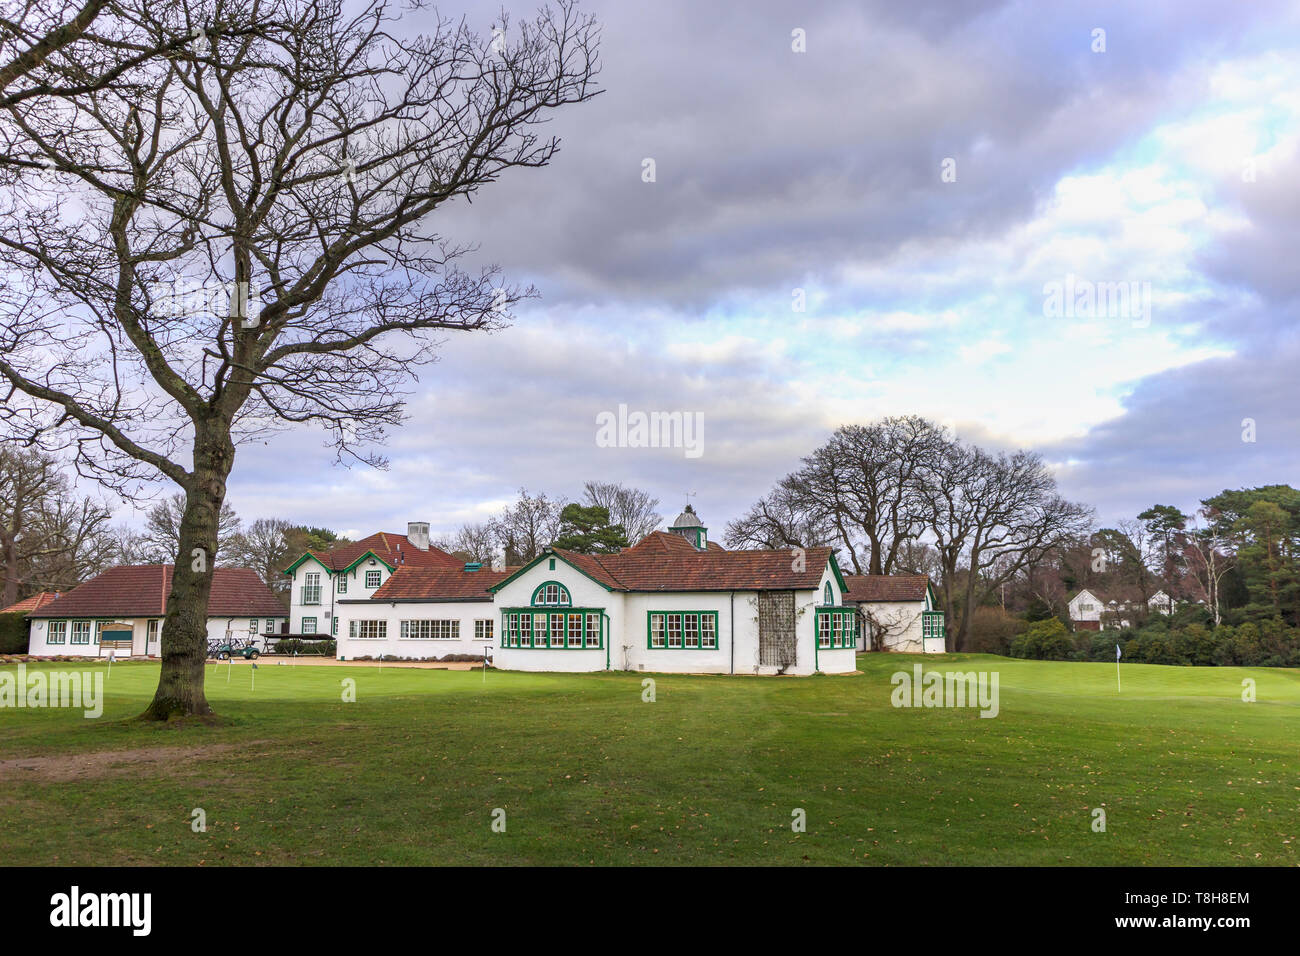 Avis de Woking Golf Club et le club-house à Hook Heath, Woking sur l'image avec un ciel nuageux en hiver Banque D'Images